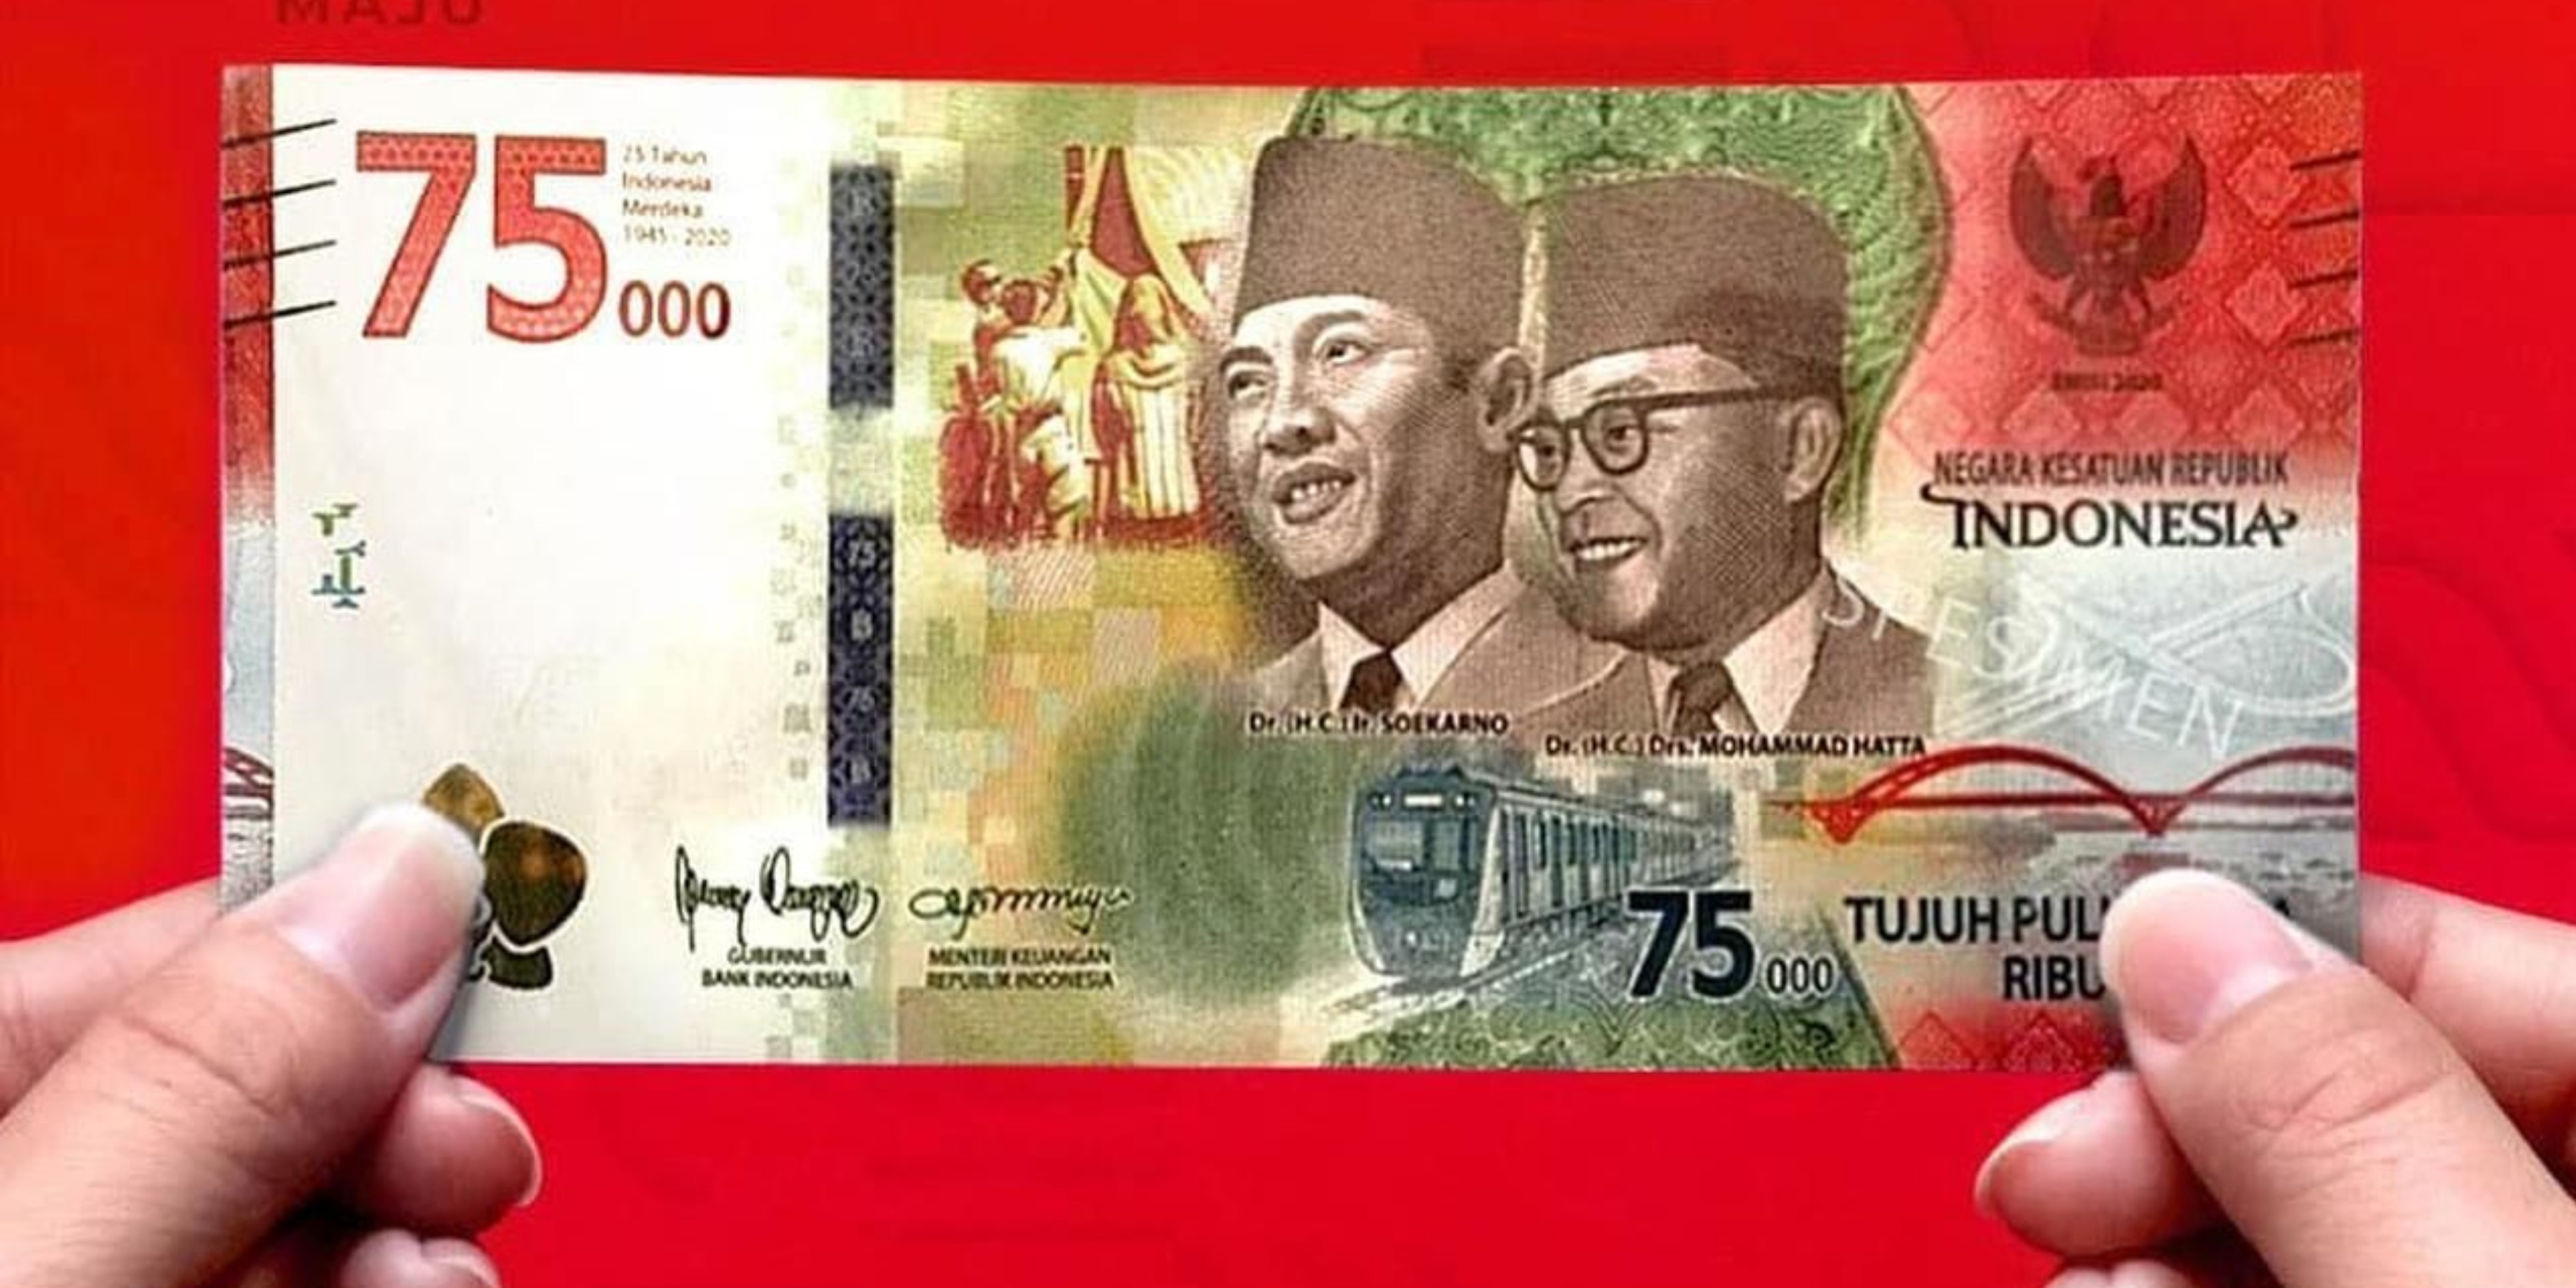 인도네시아 독립75주년 기념 화폐